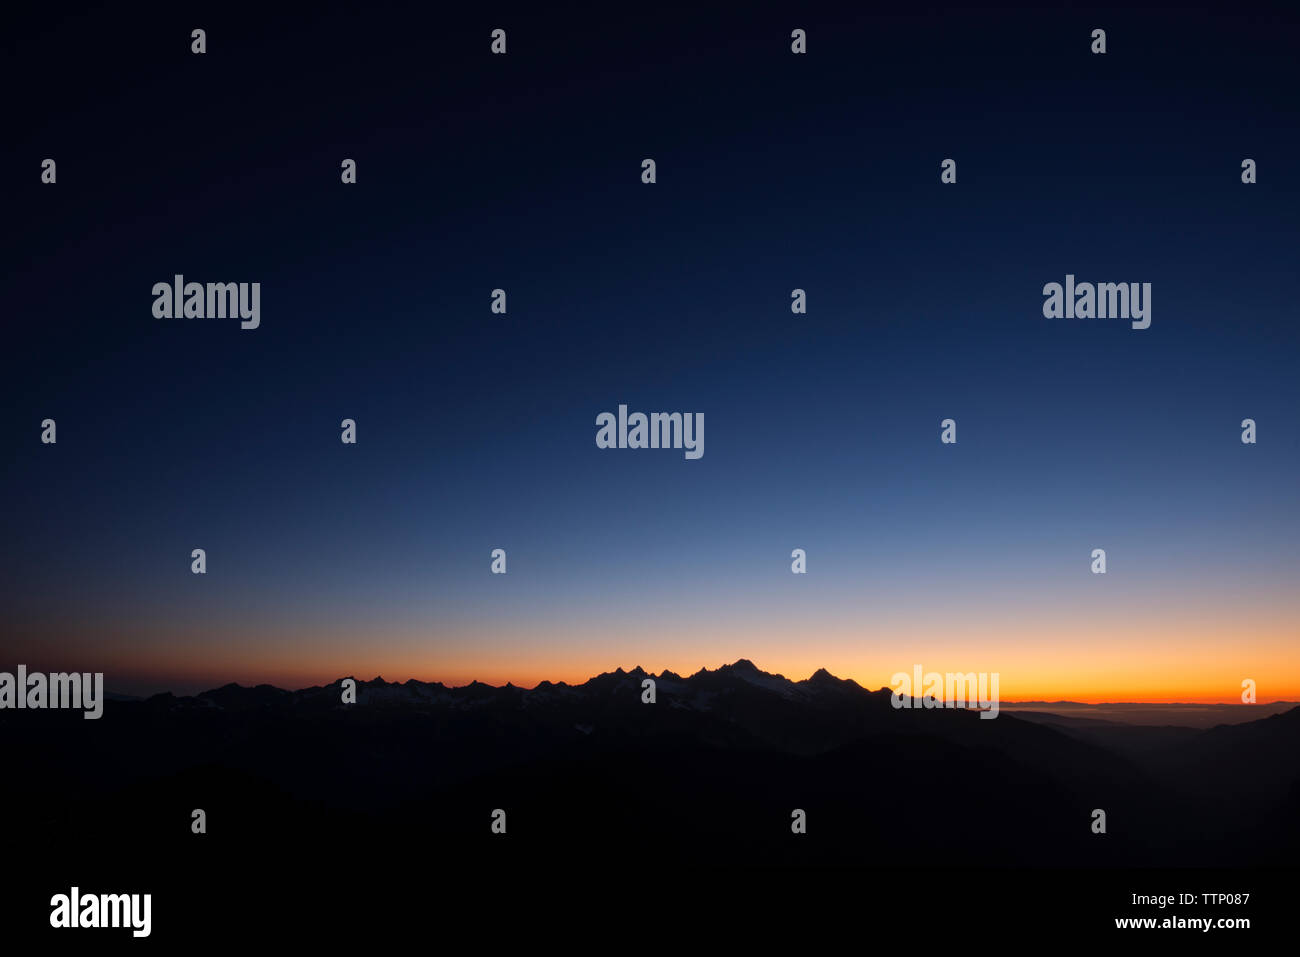 Silhouette montagne contro il cielo chiaro di notte Foto Stock